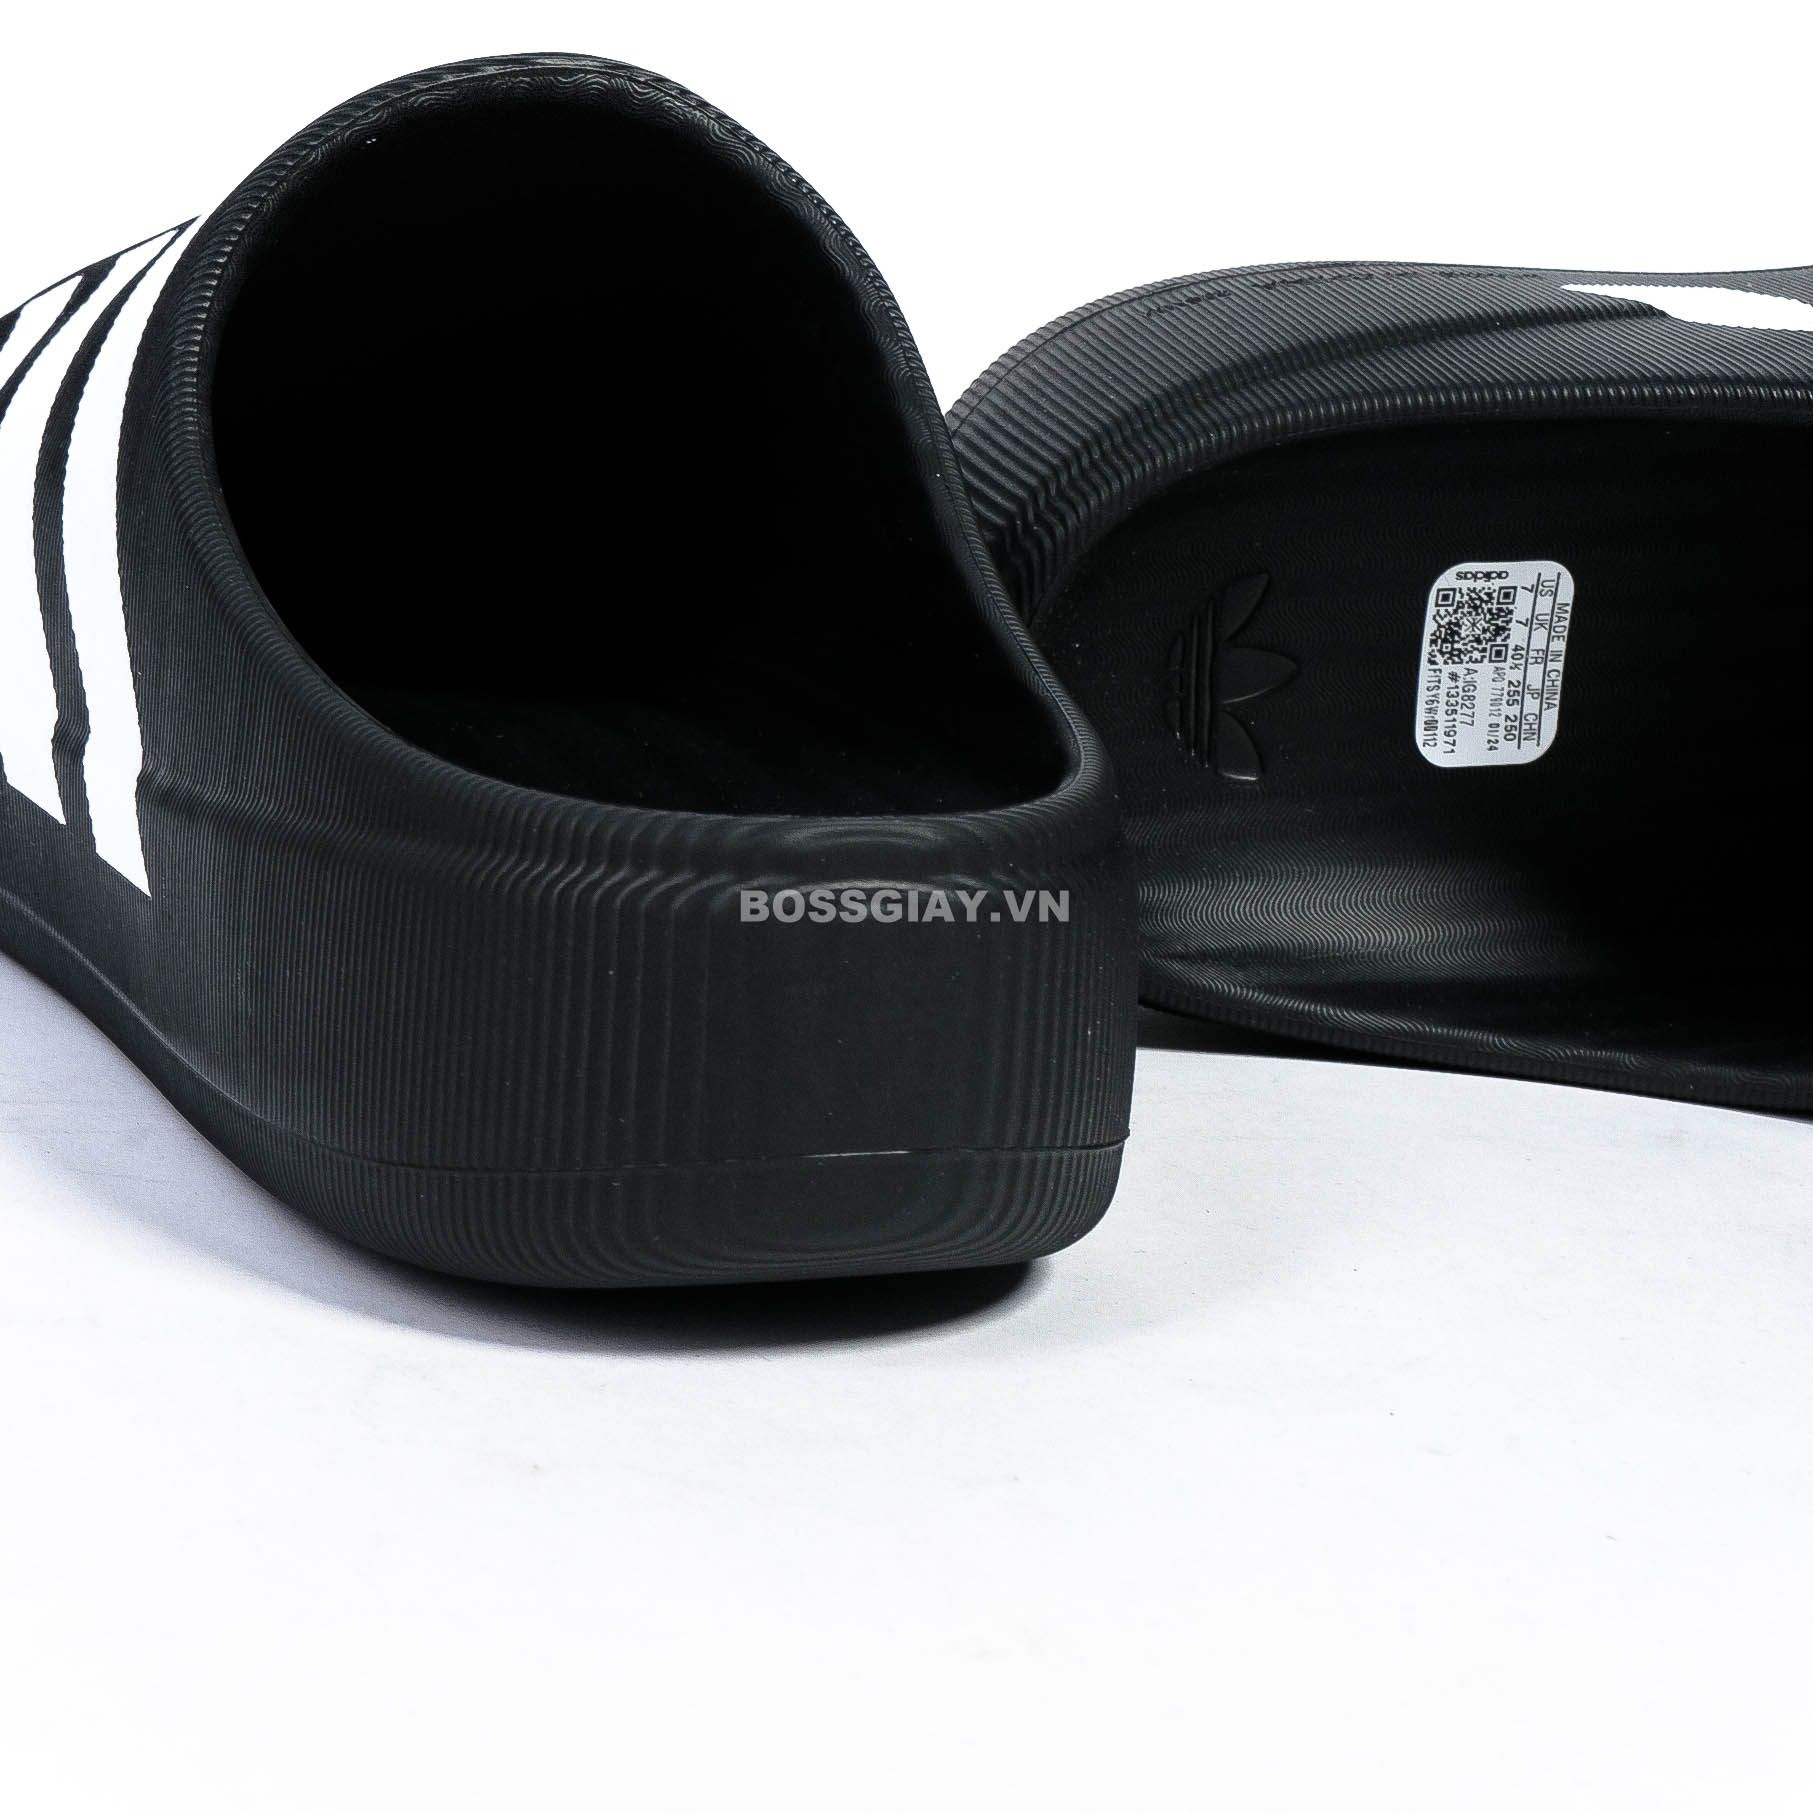  Adidas adiFOM Superstar Mule Core Black IG8277 